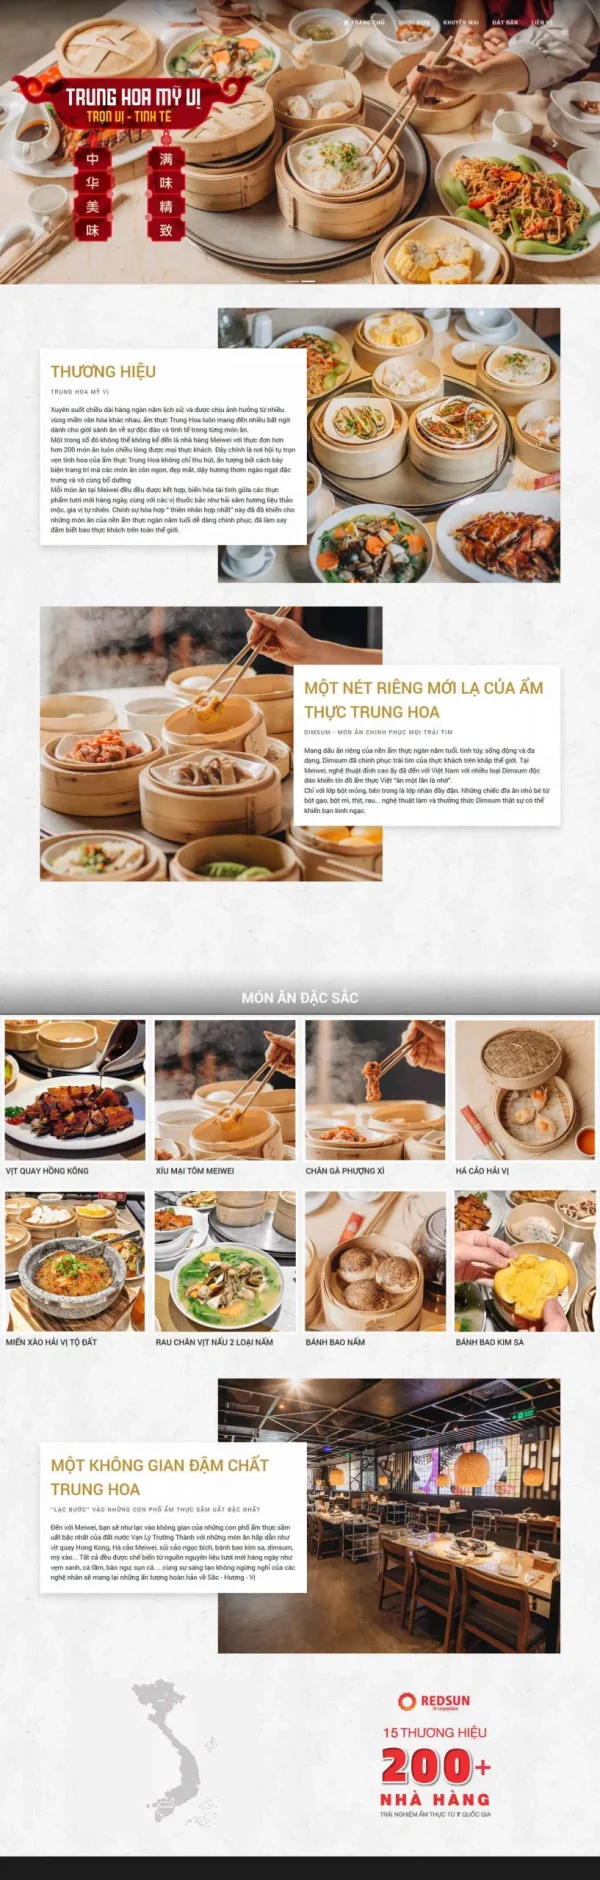 Mẫu giao diện website nhà hàng Trung Hoa mỹ vị